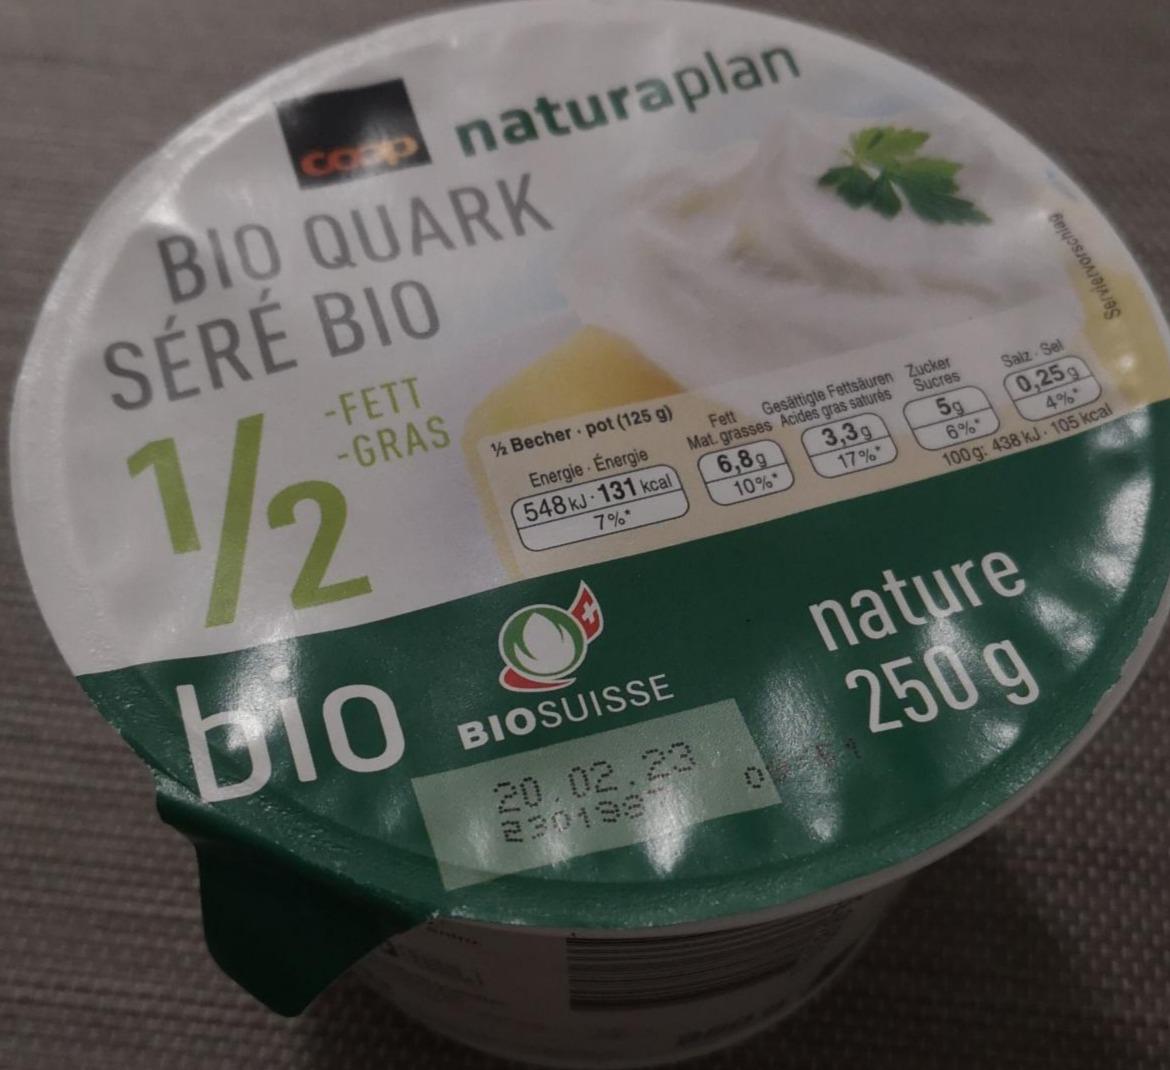 Fotografie - Bio Quark - Séré nature Coop Naturaplan